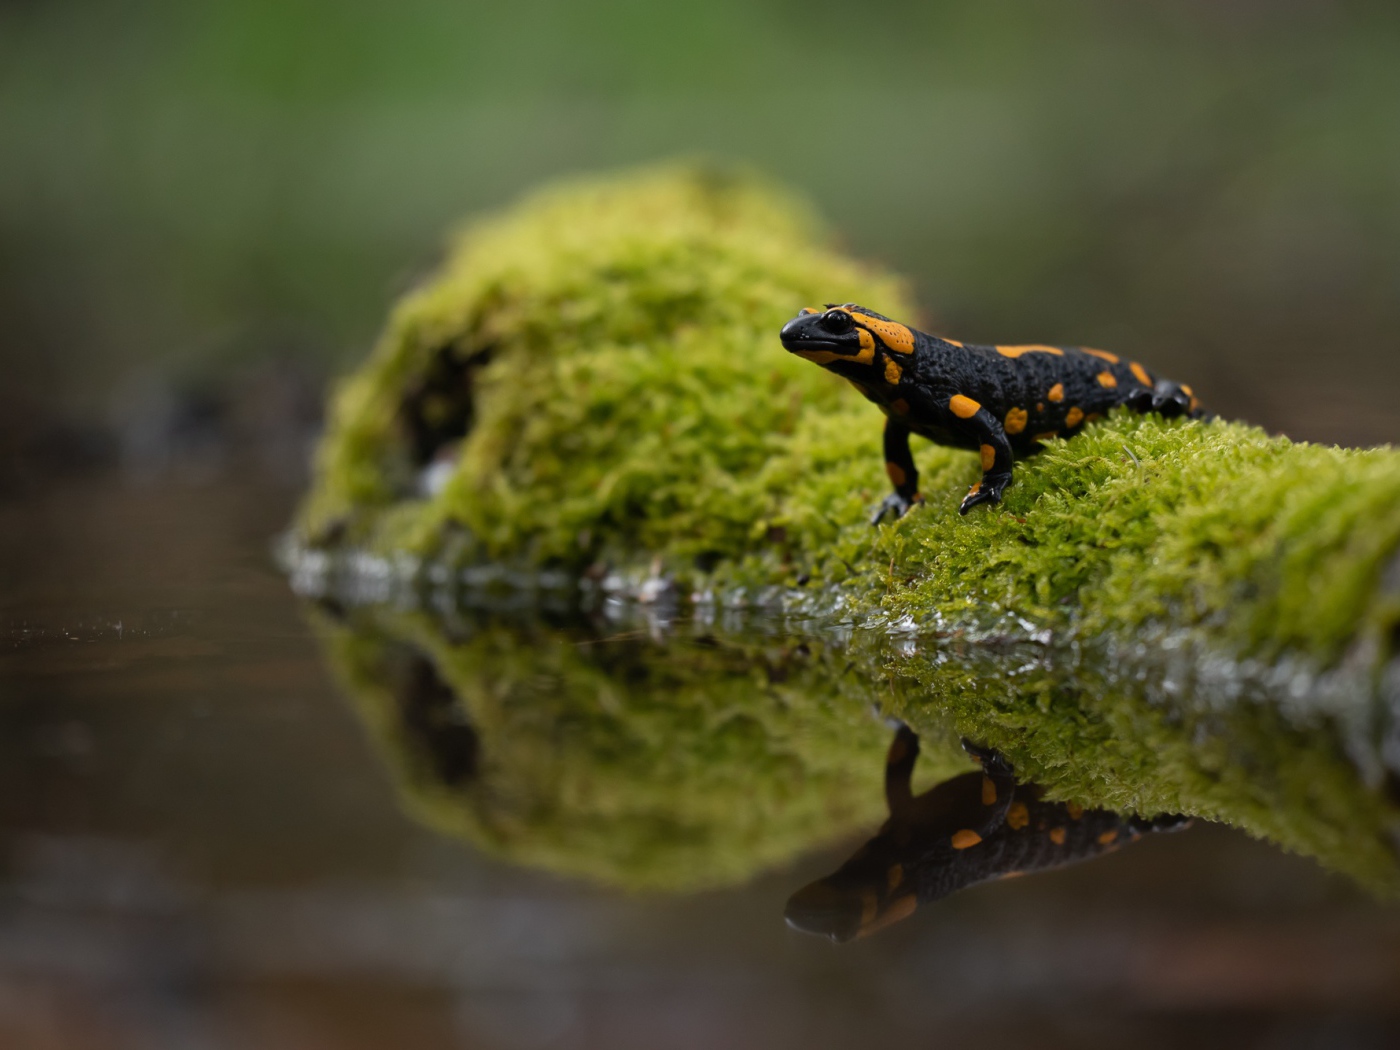 Beautiful salamander reflected in the water